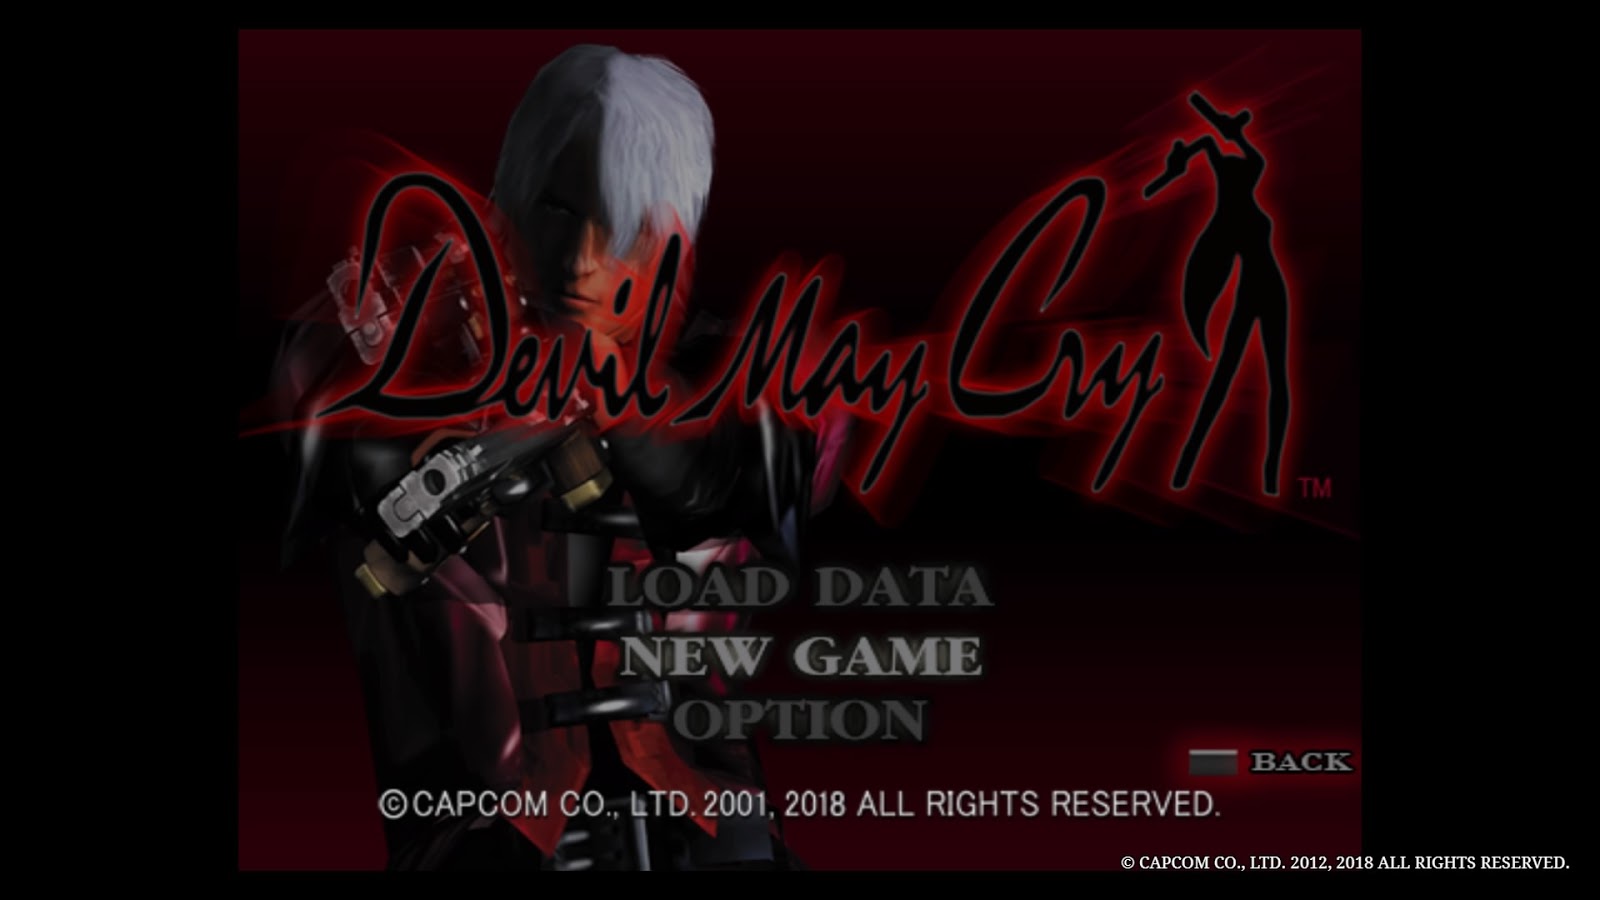 Devil May Cry HD Collection (Classico Ps2) Midia Digital Ps3 - WR Games Os  melhores jogos estão aqui!!!!